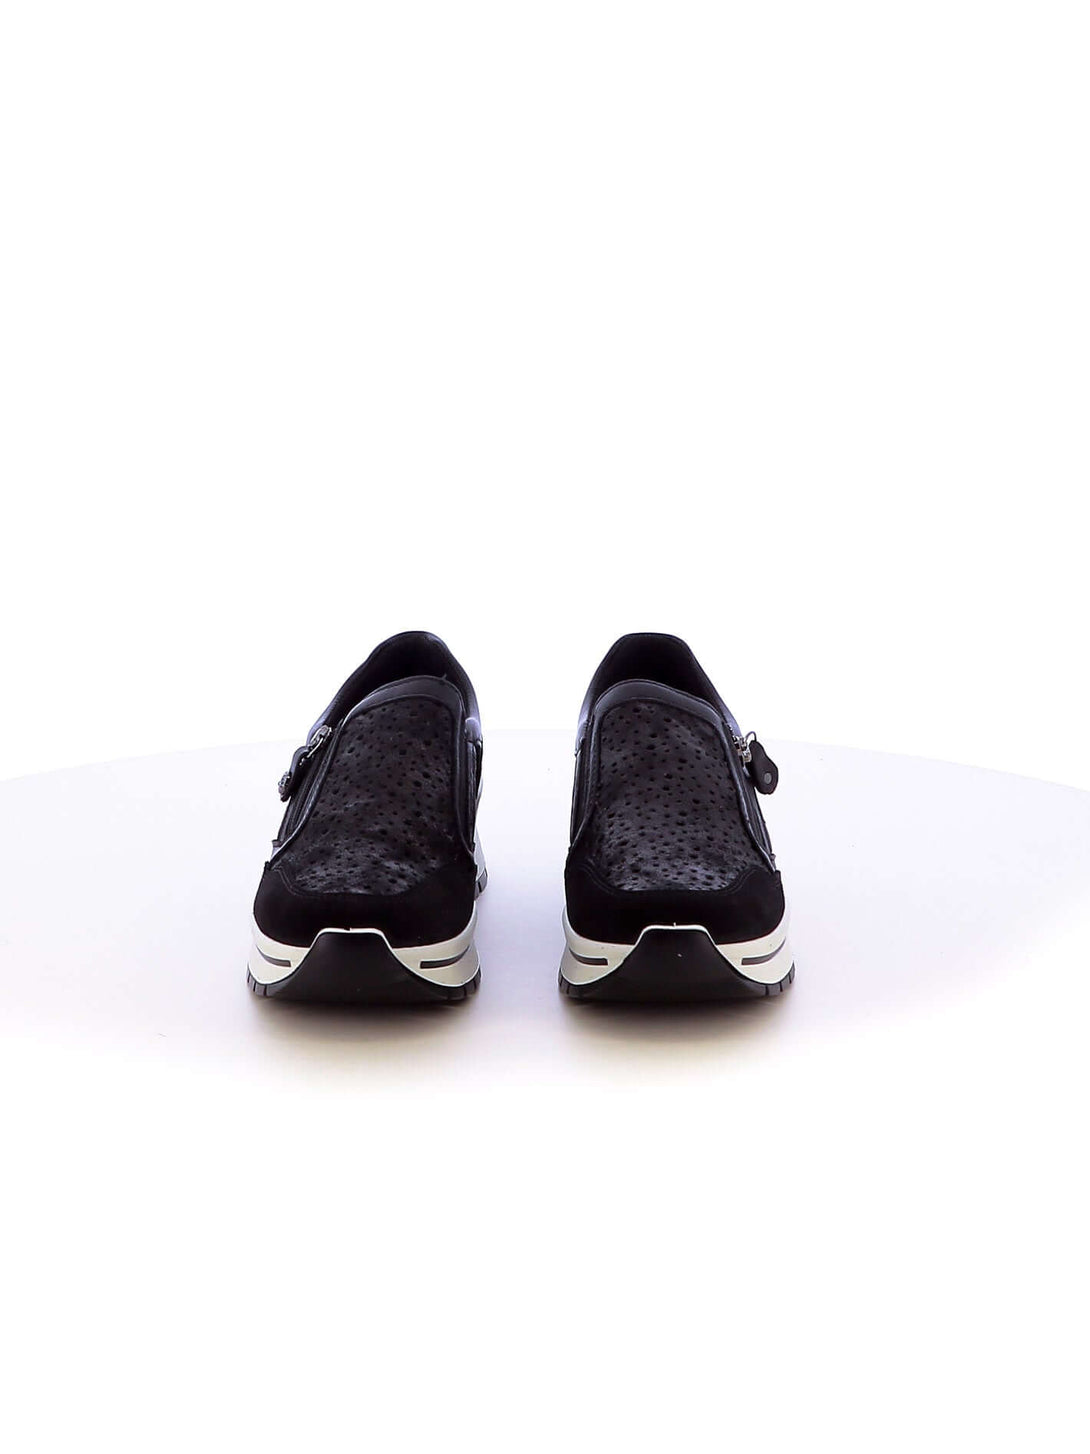 Sneakers senza lacci donna IMAC 557040 nero | Costa Superstore